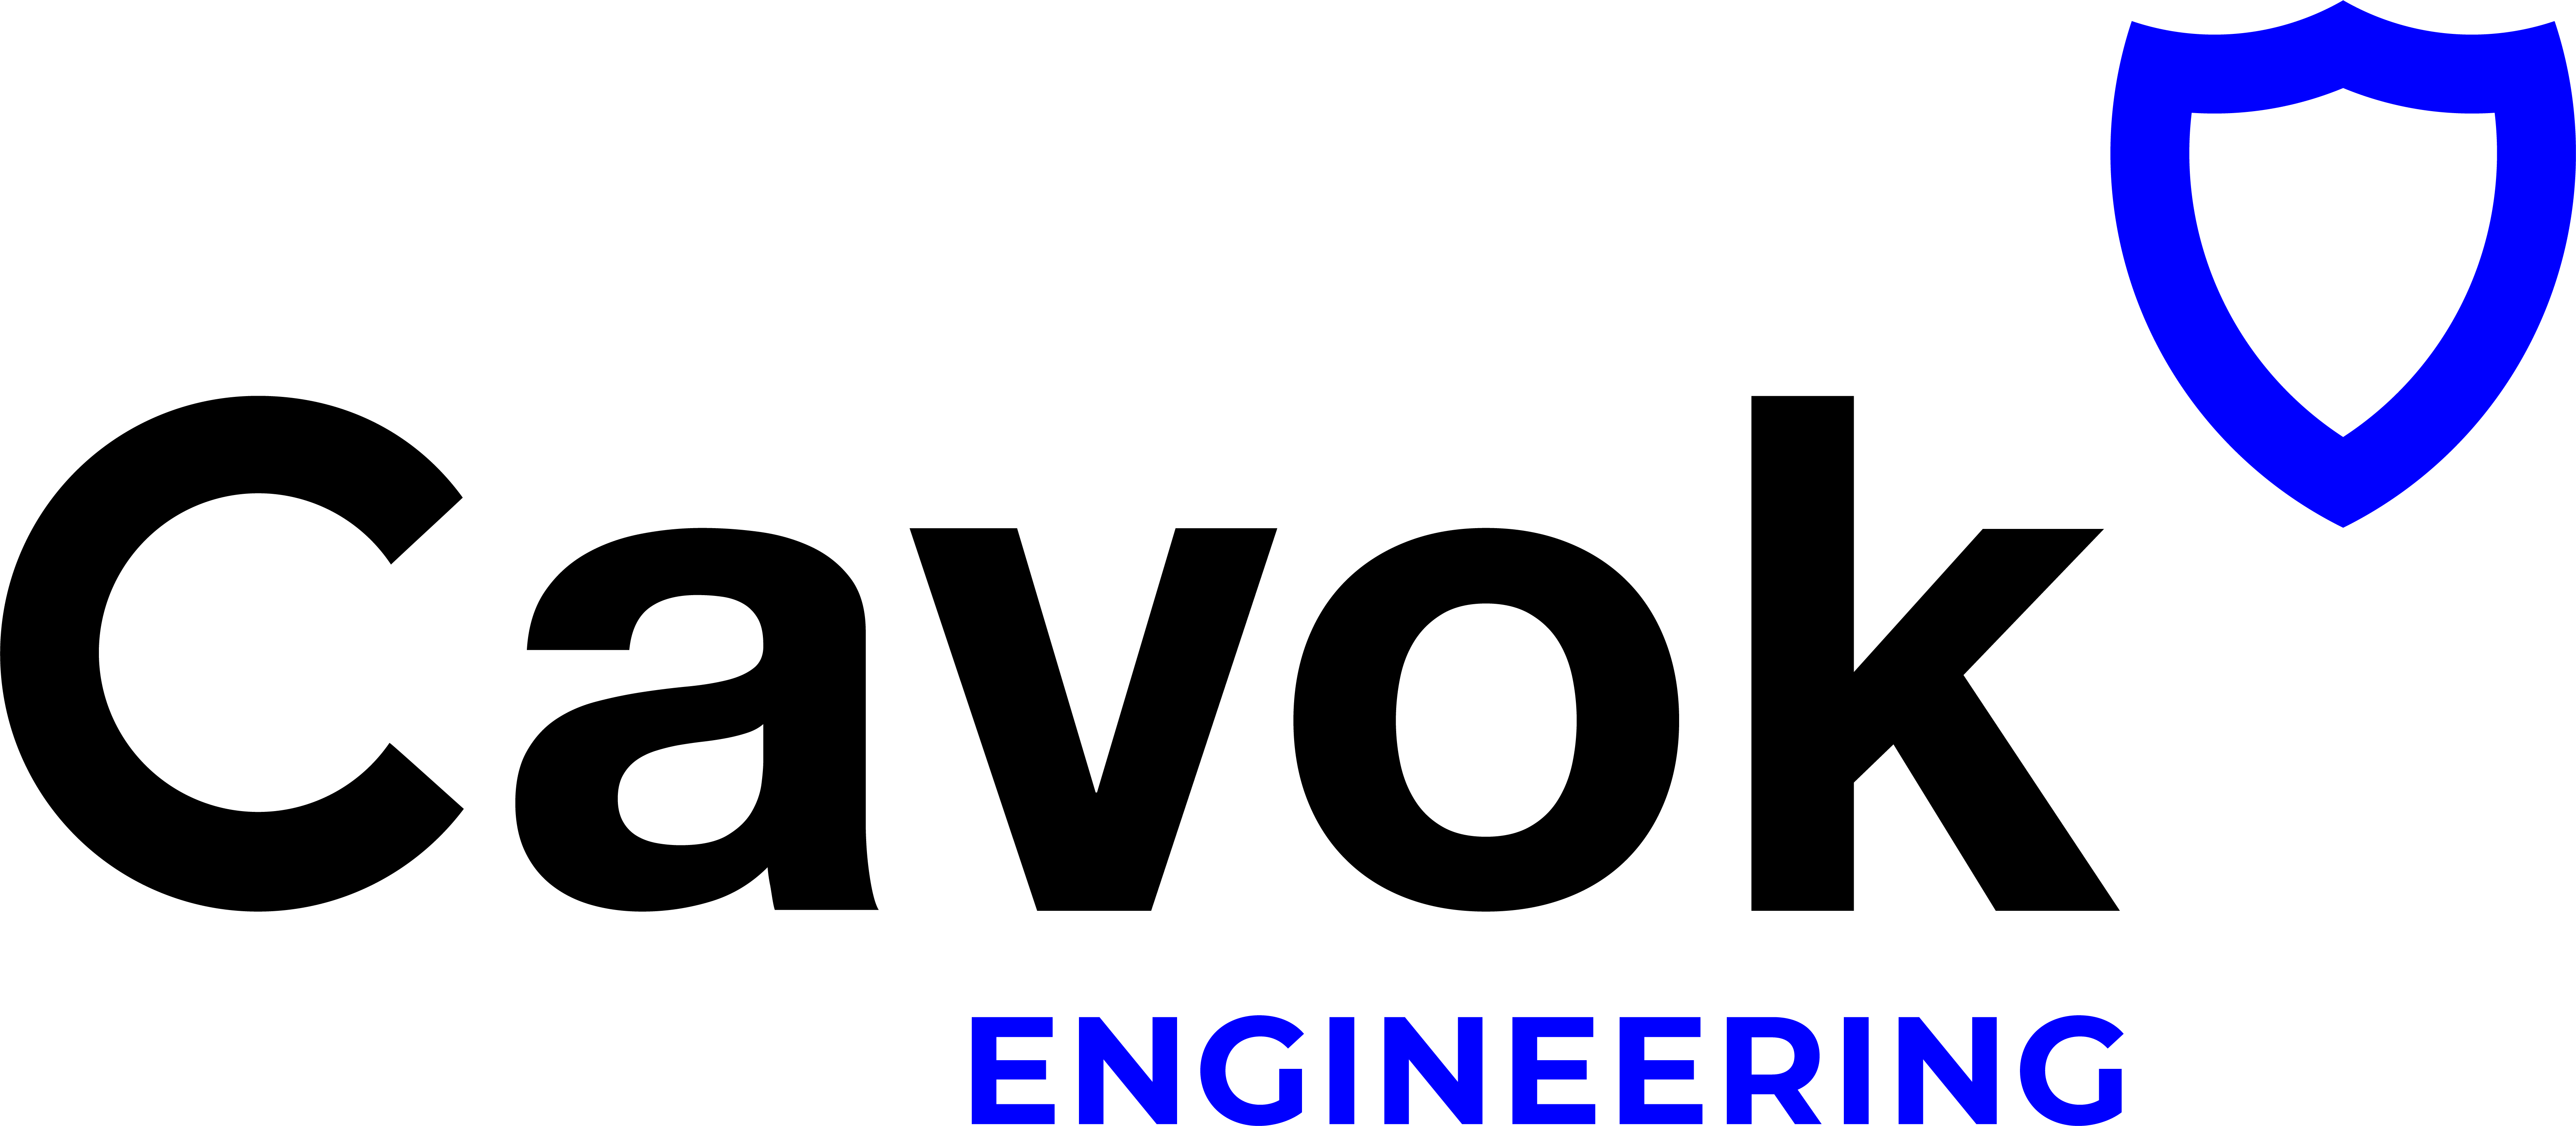 Cavok Engenharia - Engenheiro aeronáutico - Cavok Aeronáutica